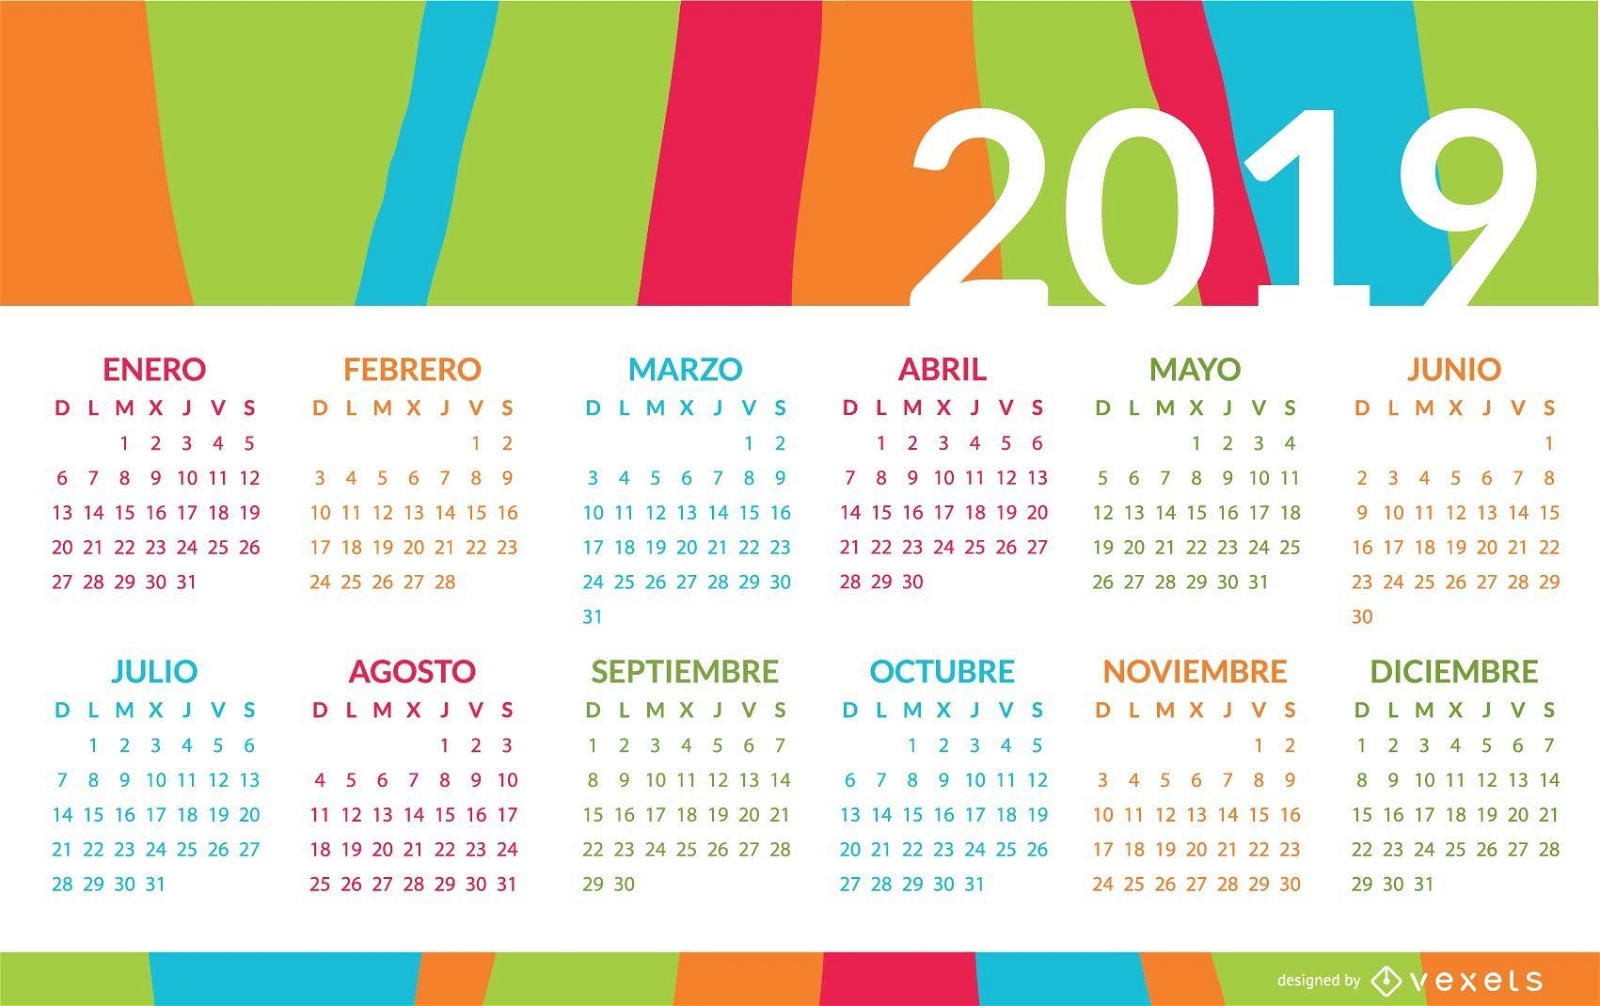 Bunter spanischer Kalenderentwurf